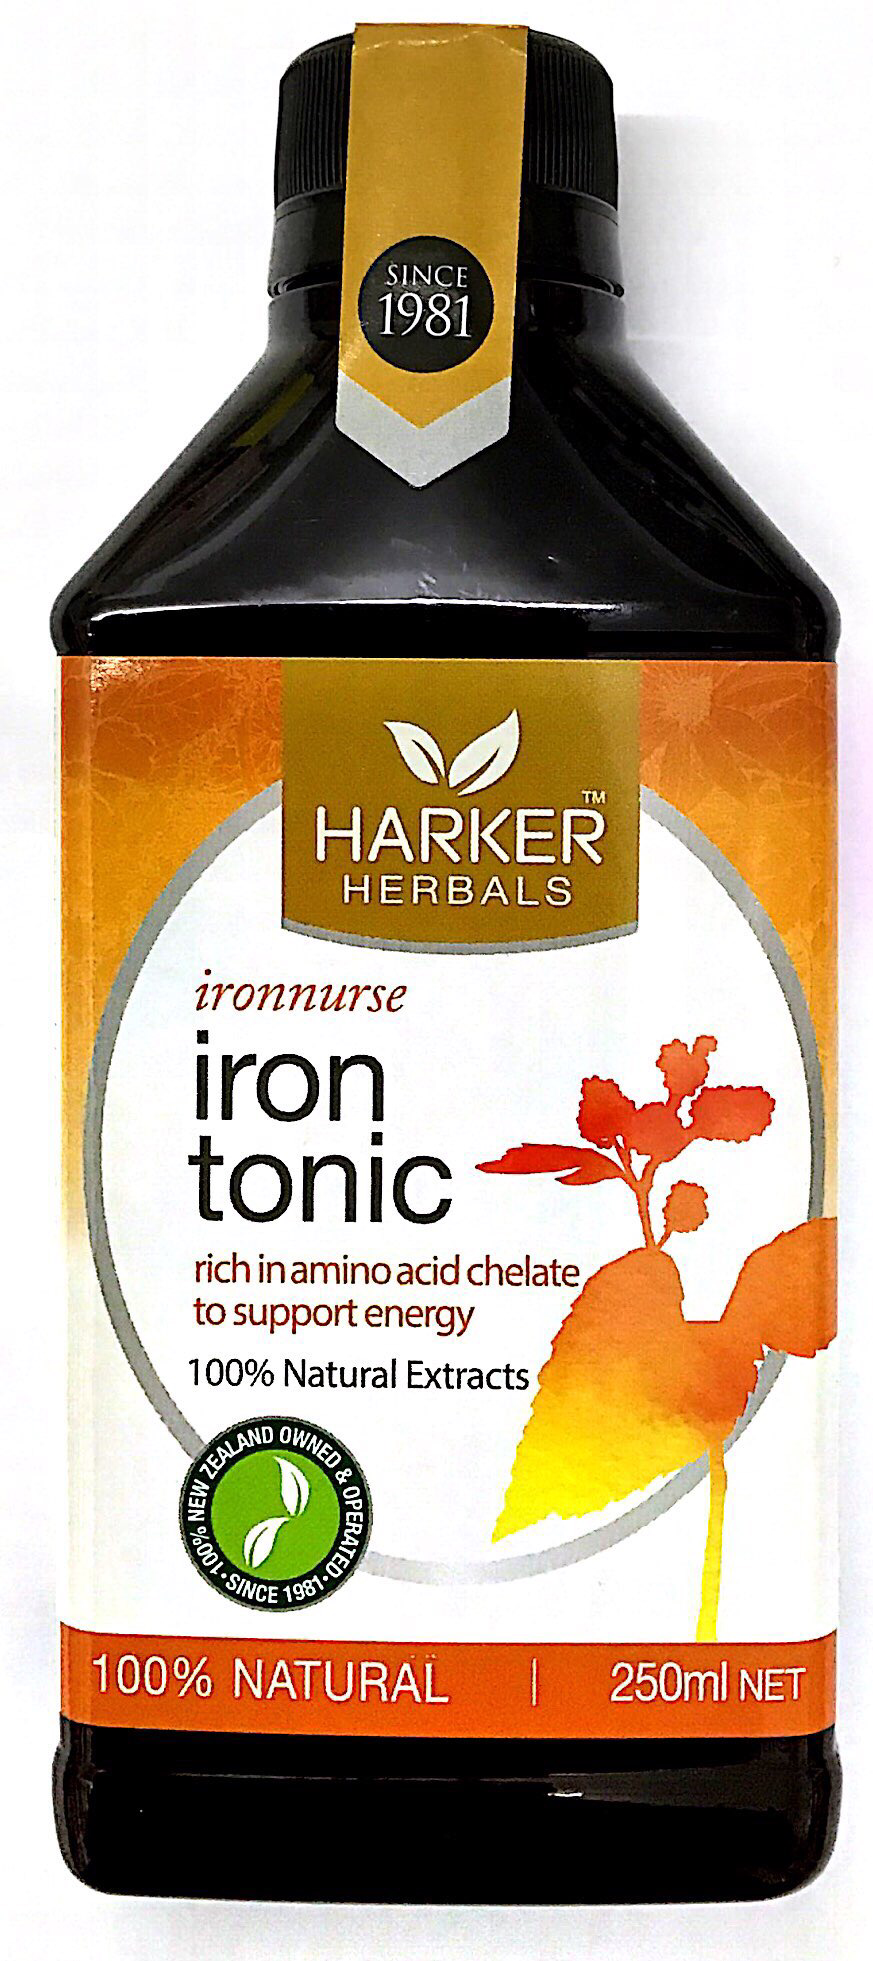 Harker Herbals Ironnurse Iron Tonic - 250 ml - Pakuranga Pharmacy